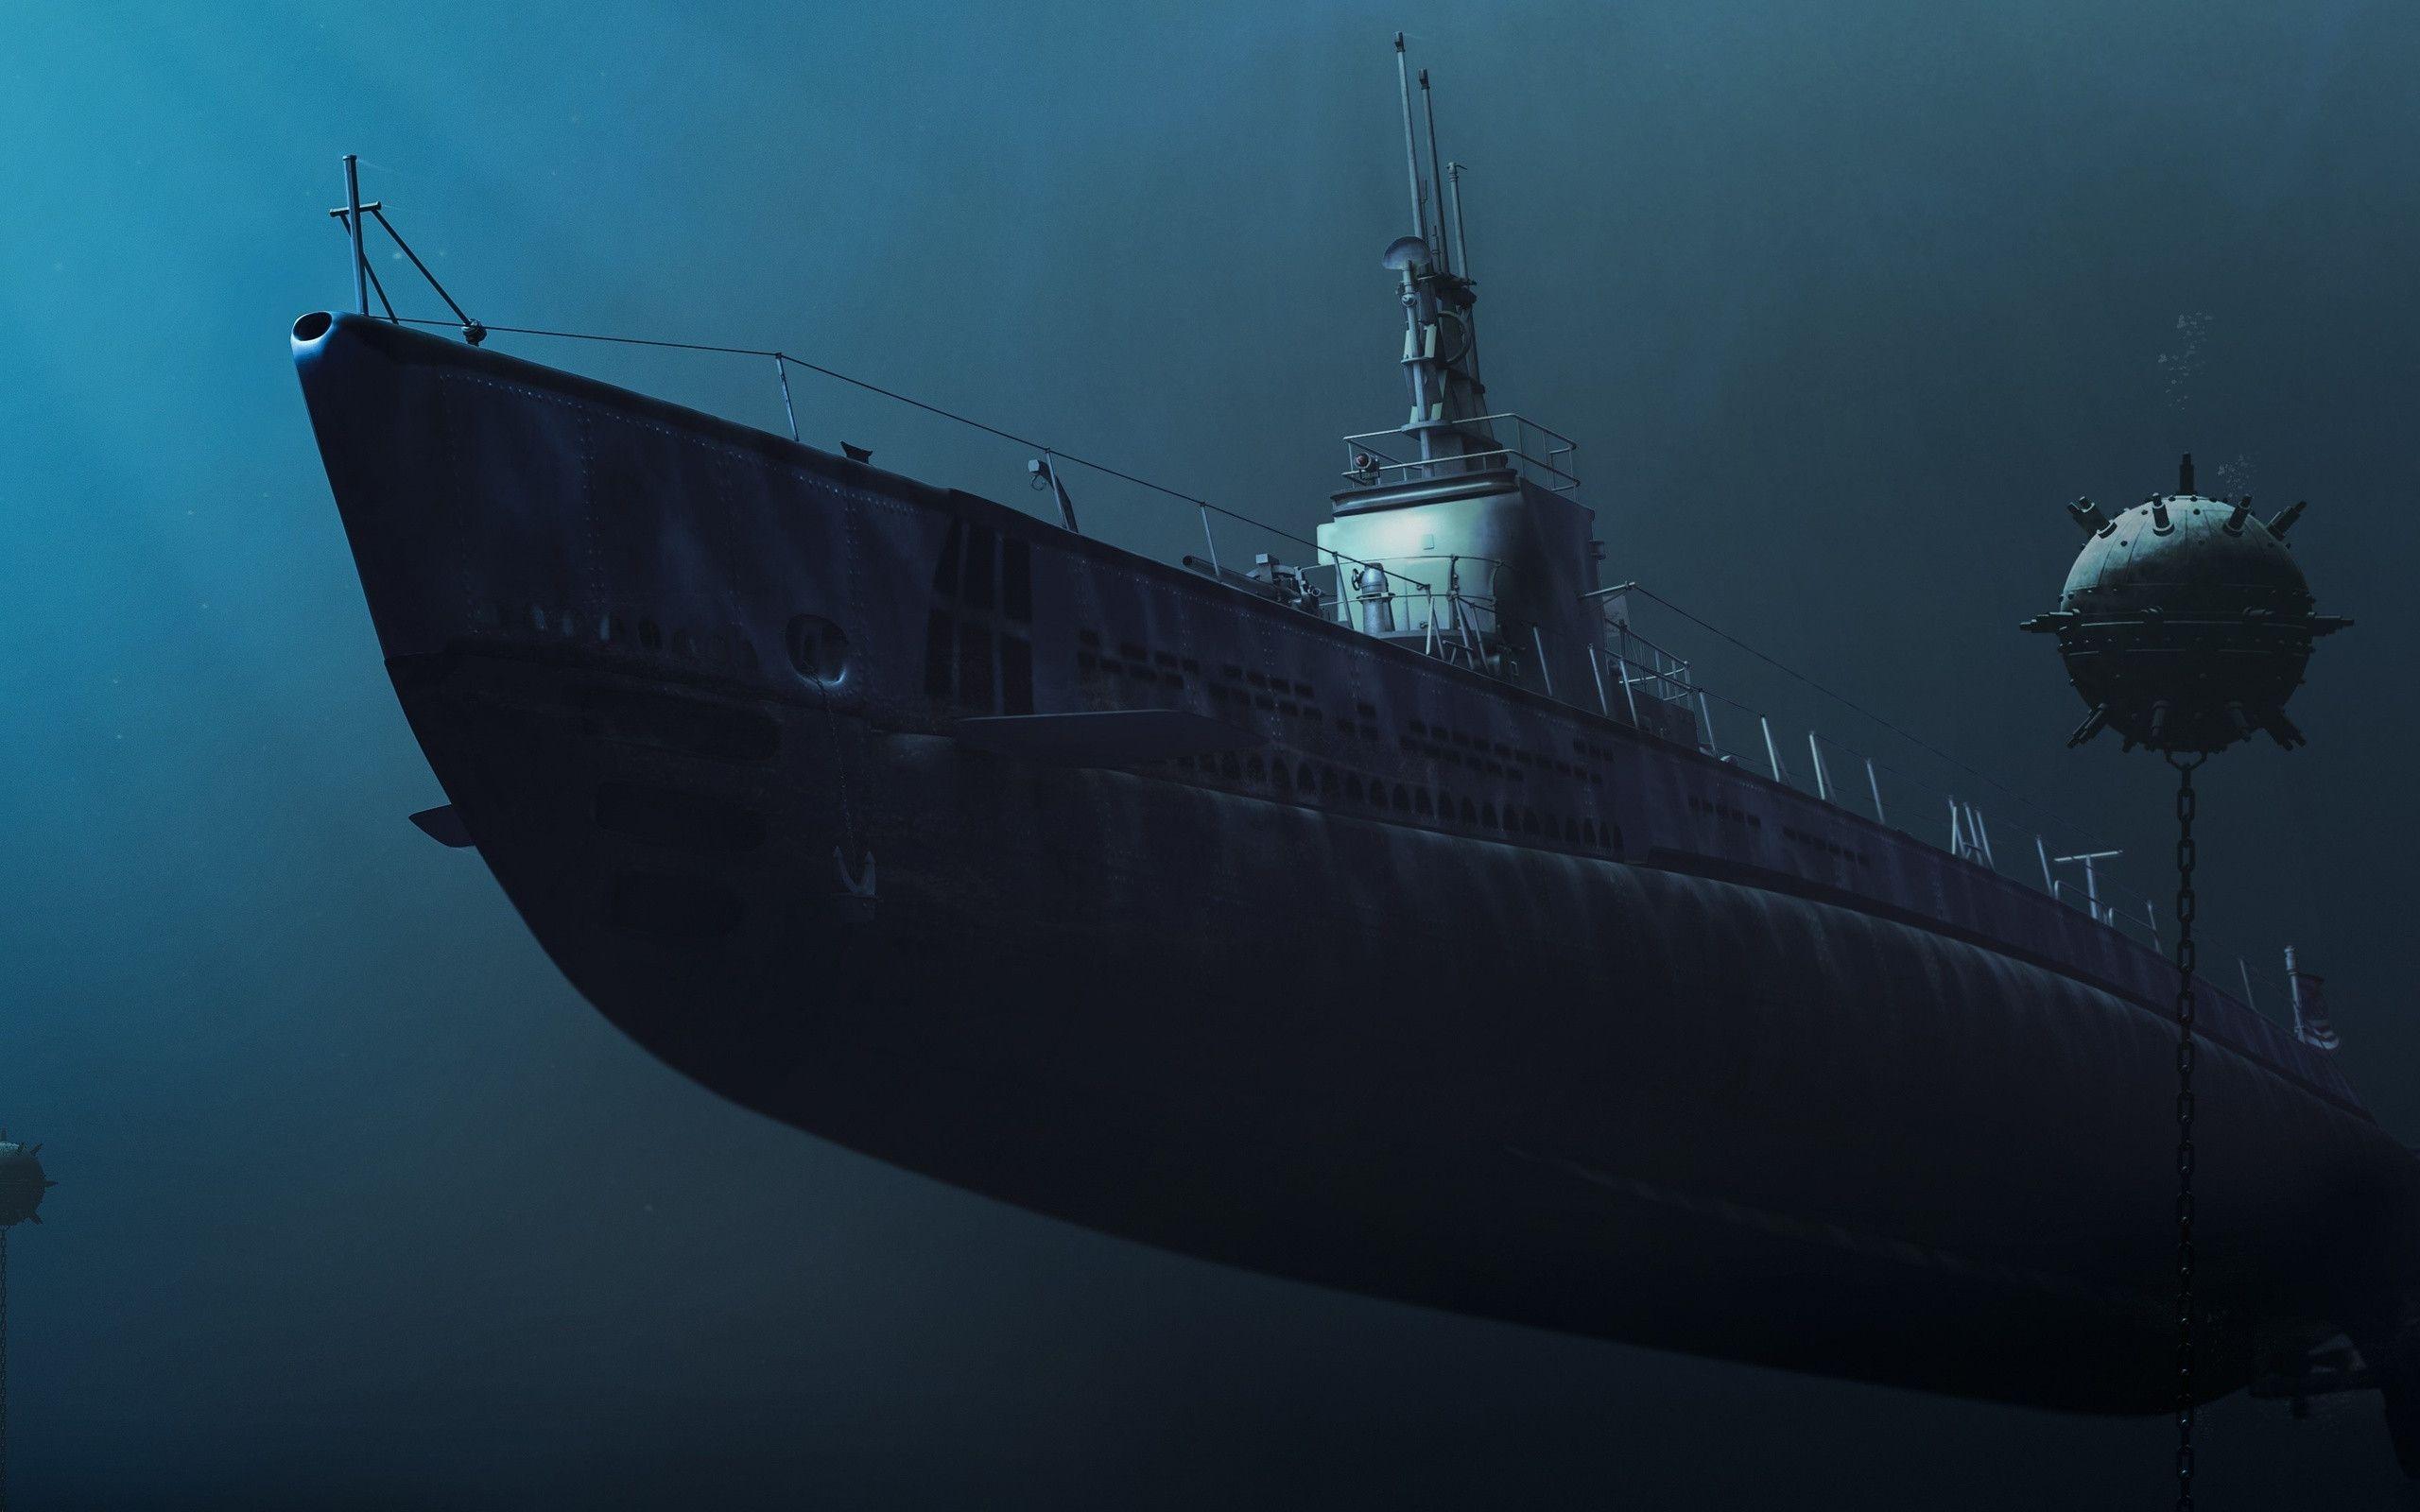  بکگراند فوق العاده جذاب از زیردریایی زیبا و خاص 